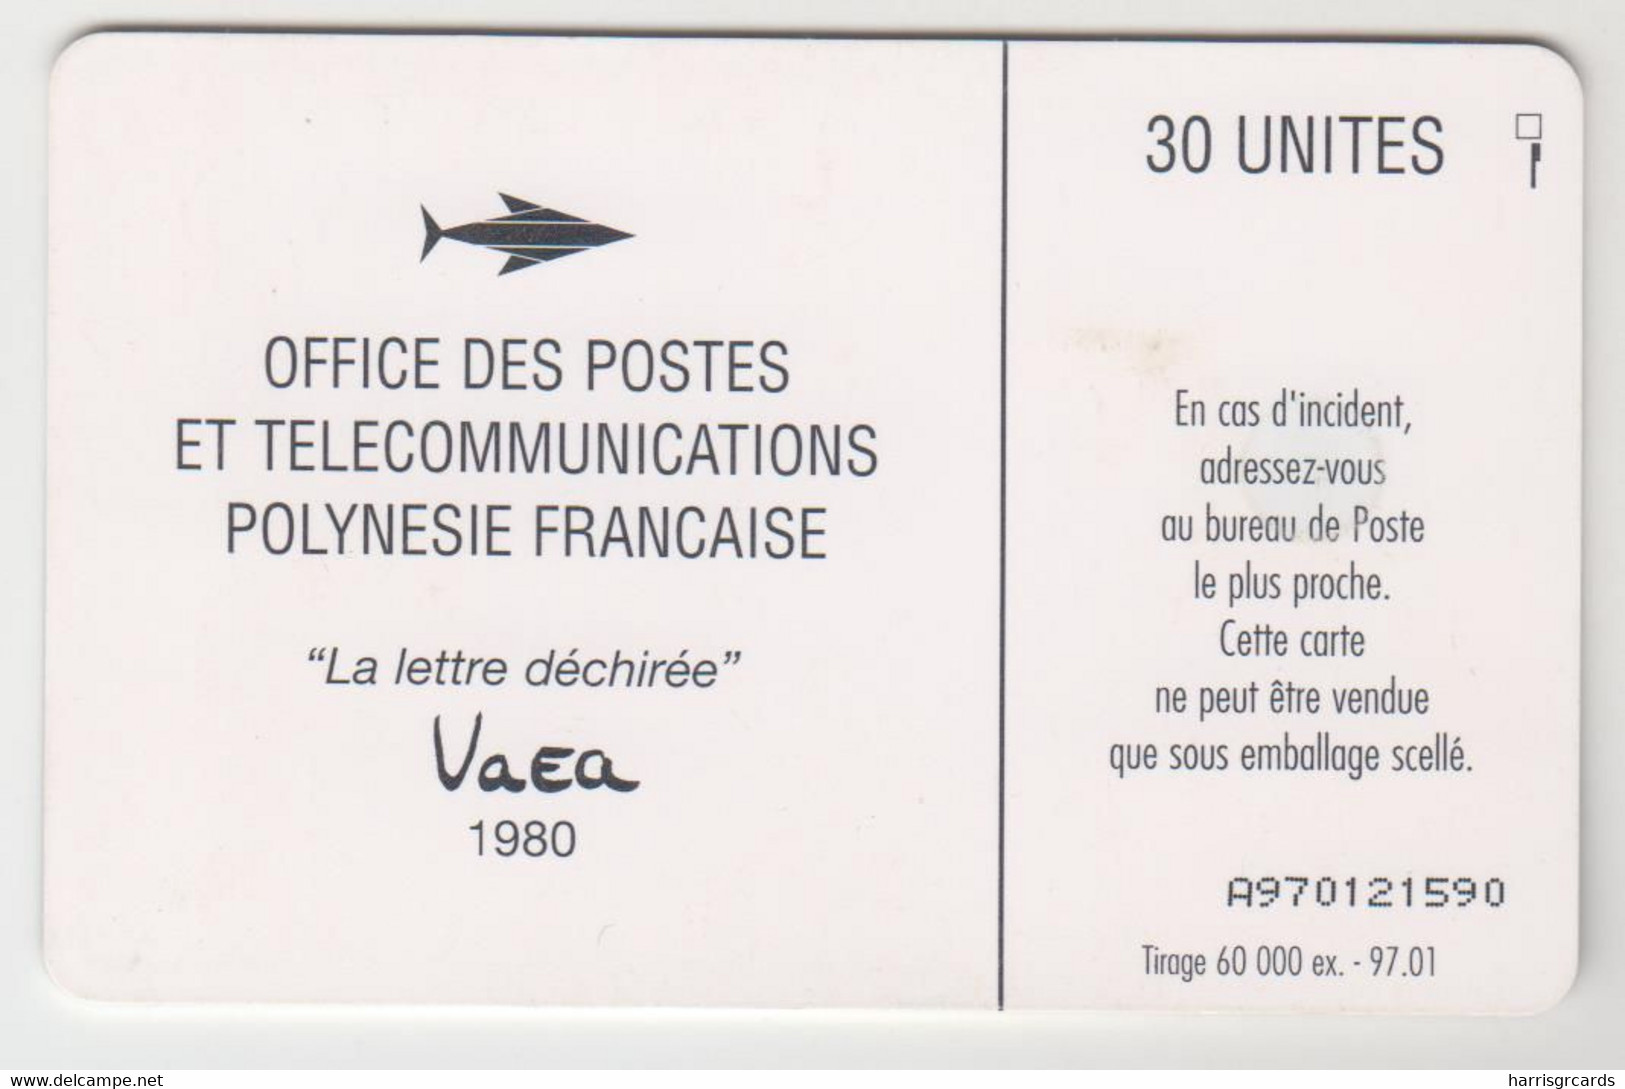 FRENCH POLYNESIA - La Lettre Déchirée, Vaea - 1980, GEM1A (Not Symmetric White/Gold), 30 U, Tirage 60.000, 01/97, Used - Polynésie Française